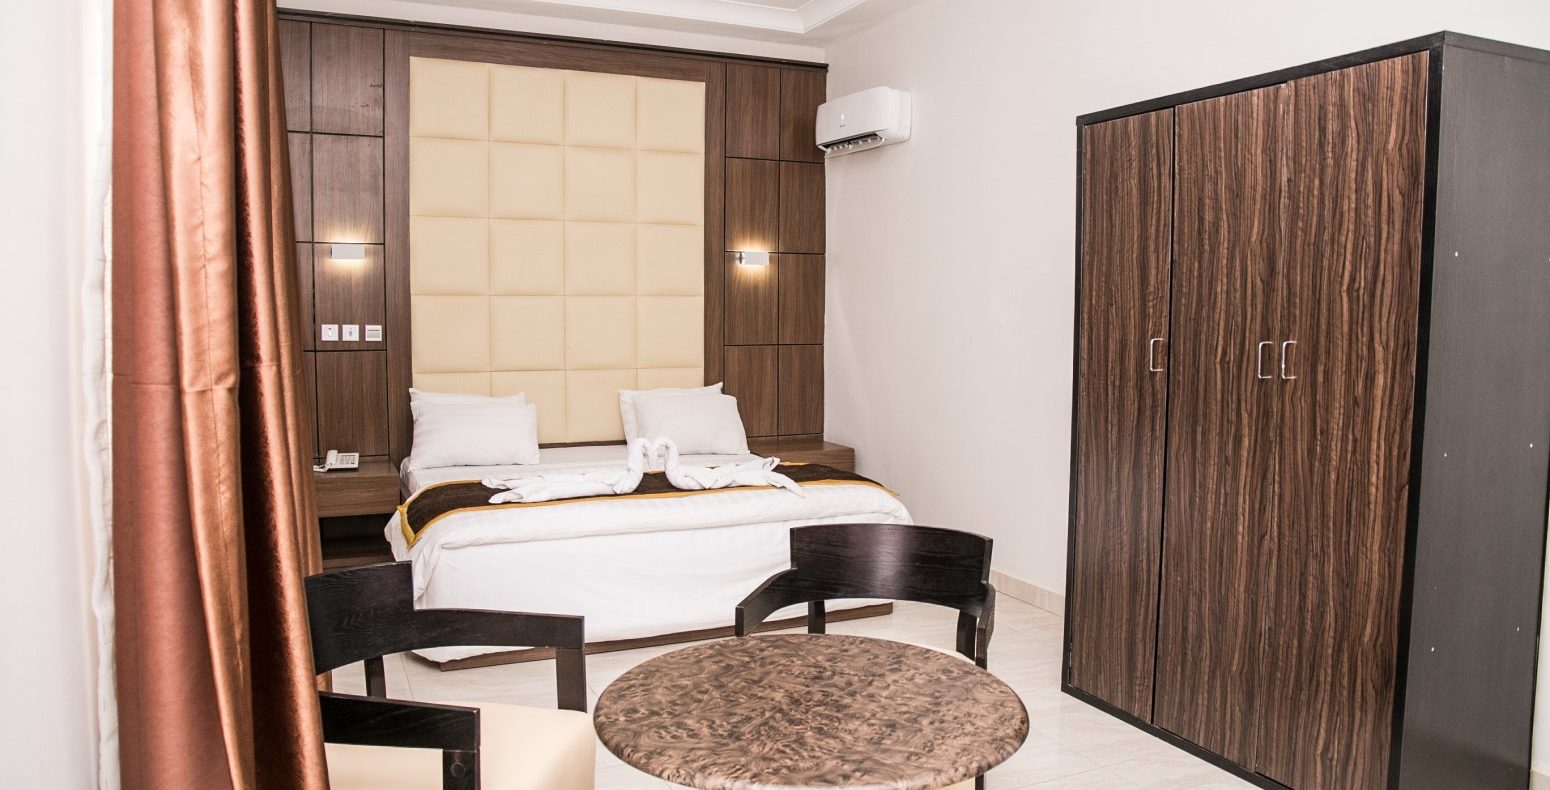 Hotel Single Room In Abuja Nigeria